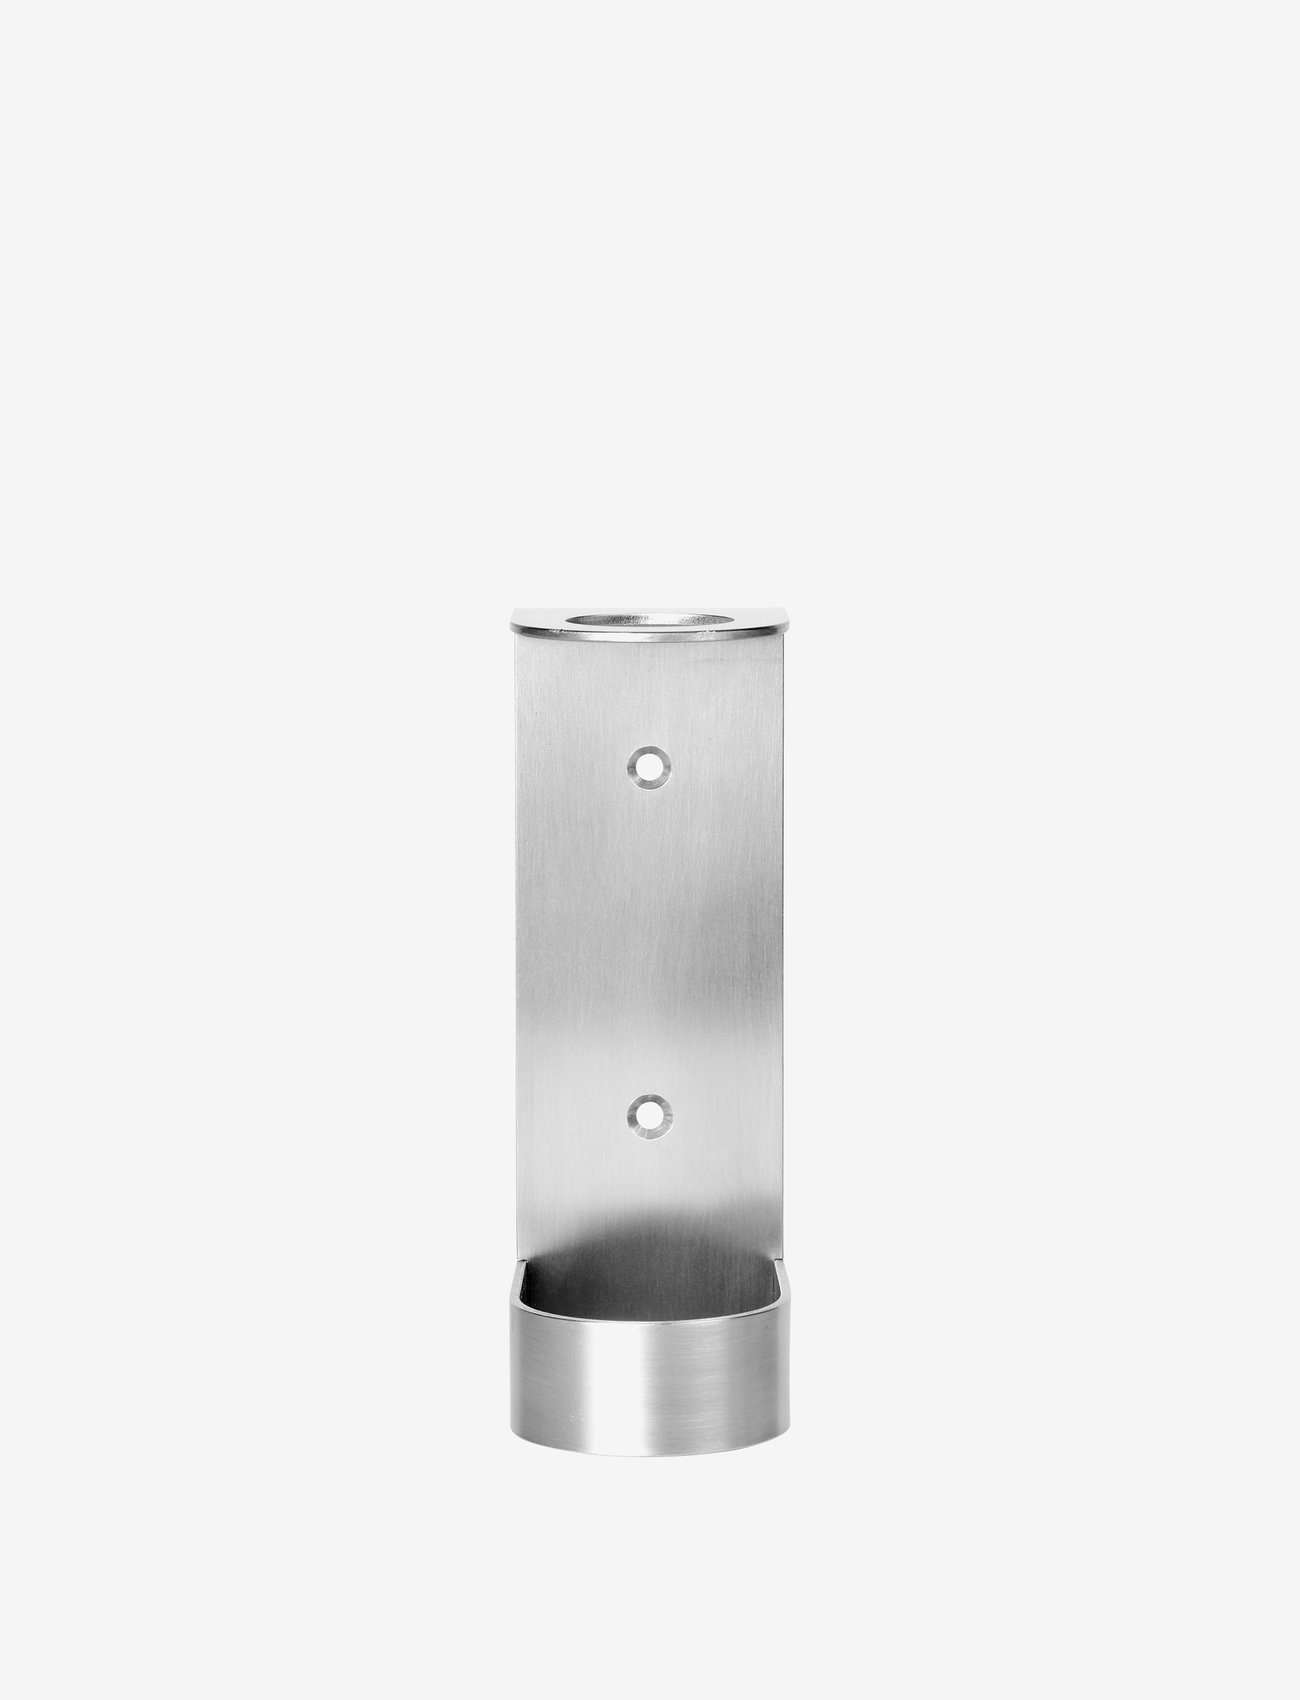 Kristina Dam Studio - Dowel Bottle Display - Hand Lotion - konksud ja nupud - stainless steel - 0